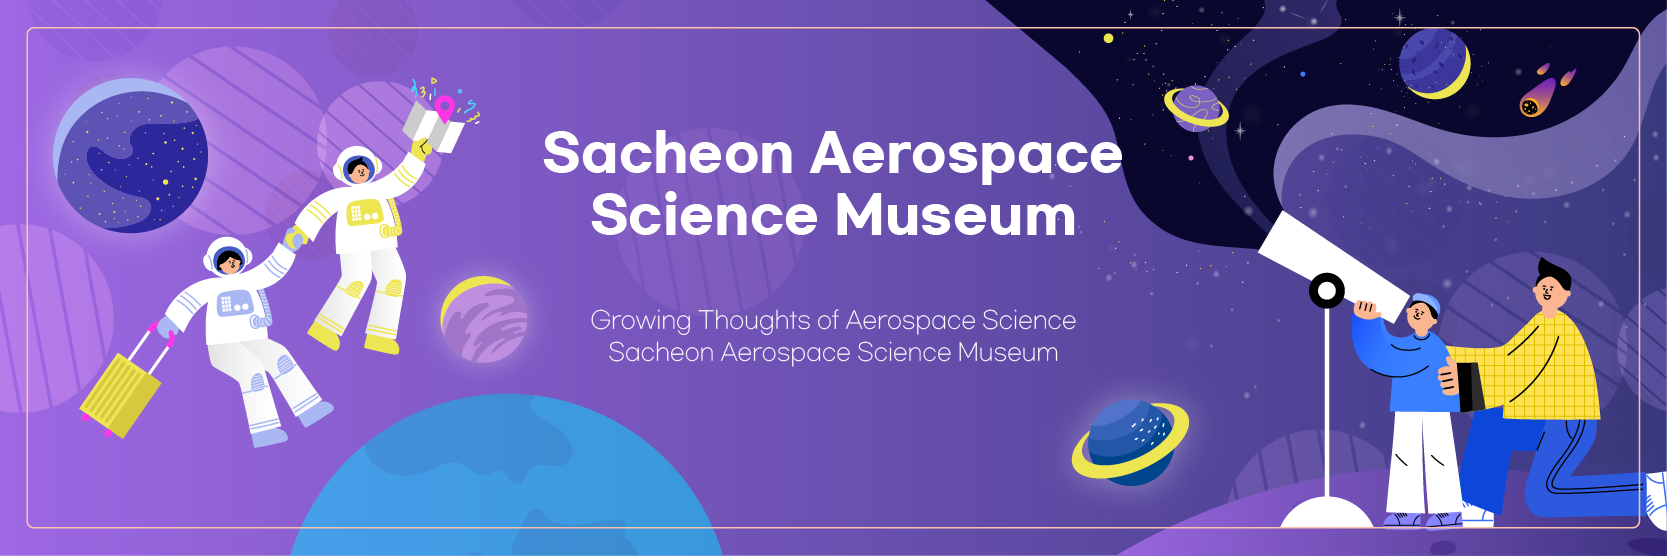 Sacheon Aerospace Science Museum - Growing Thoughts of Aerospace Science Sacheon Aerospace Science Museum